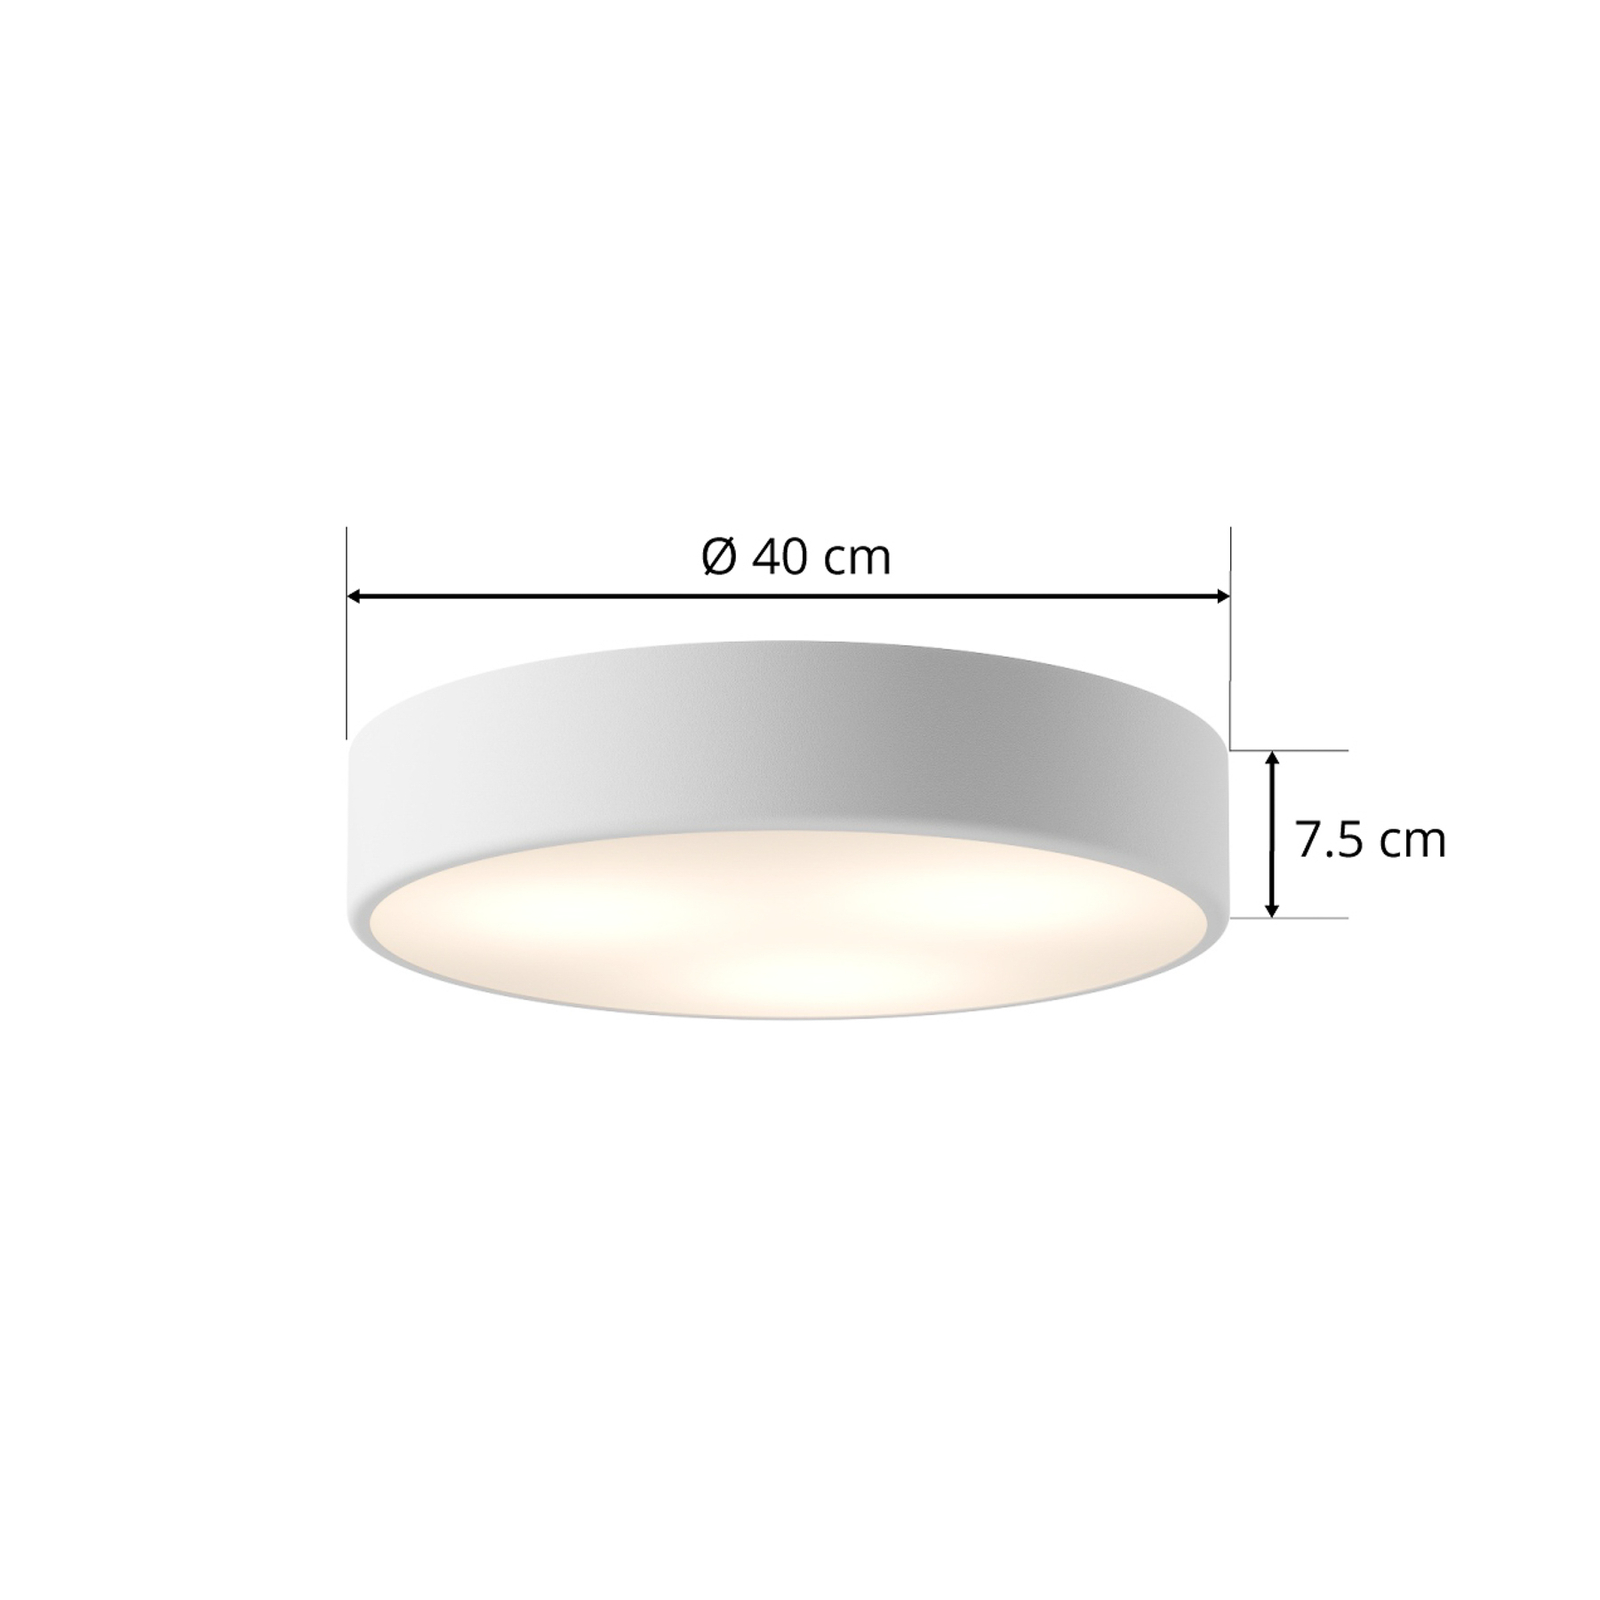 Lampa sufitowa Cleo, Ø 40 cm, biały, metal, E27, 3-punktowa